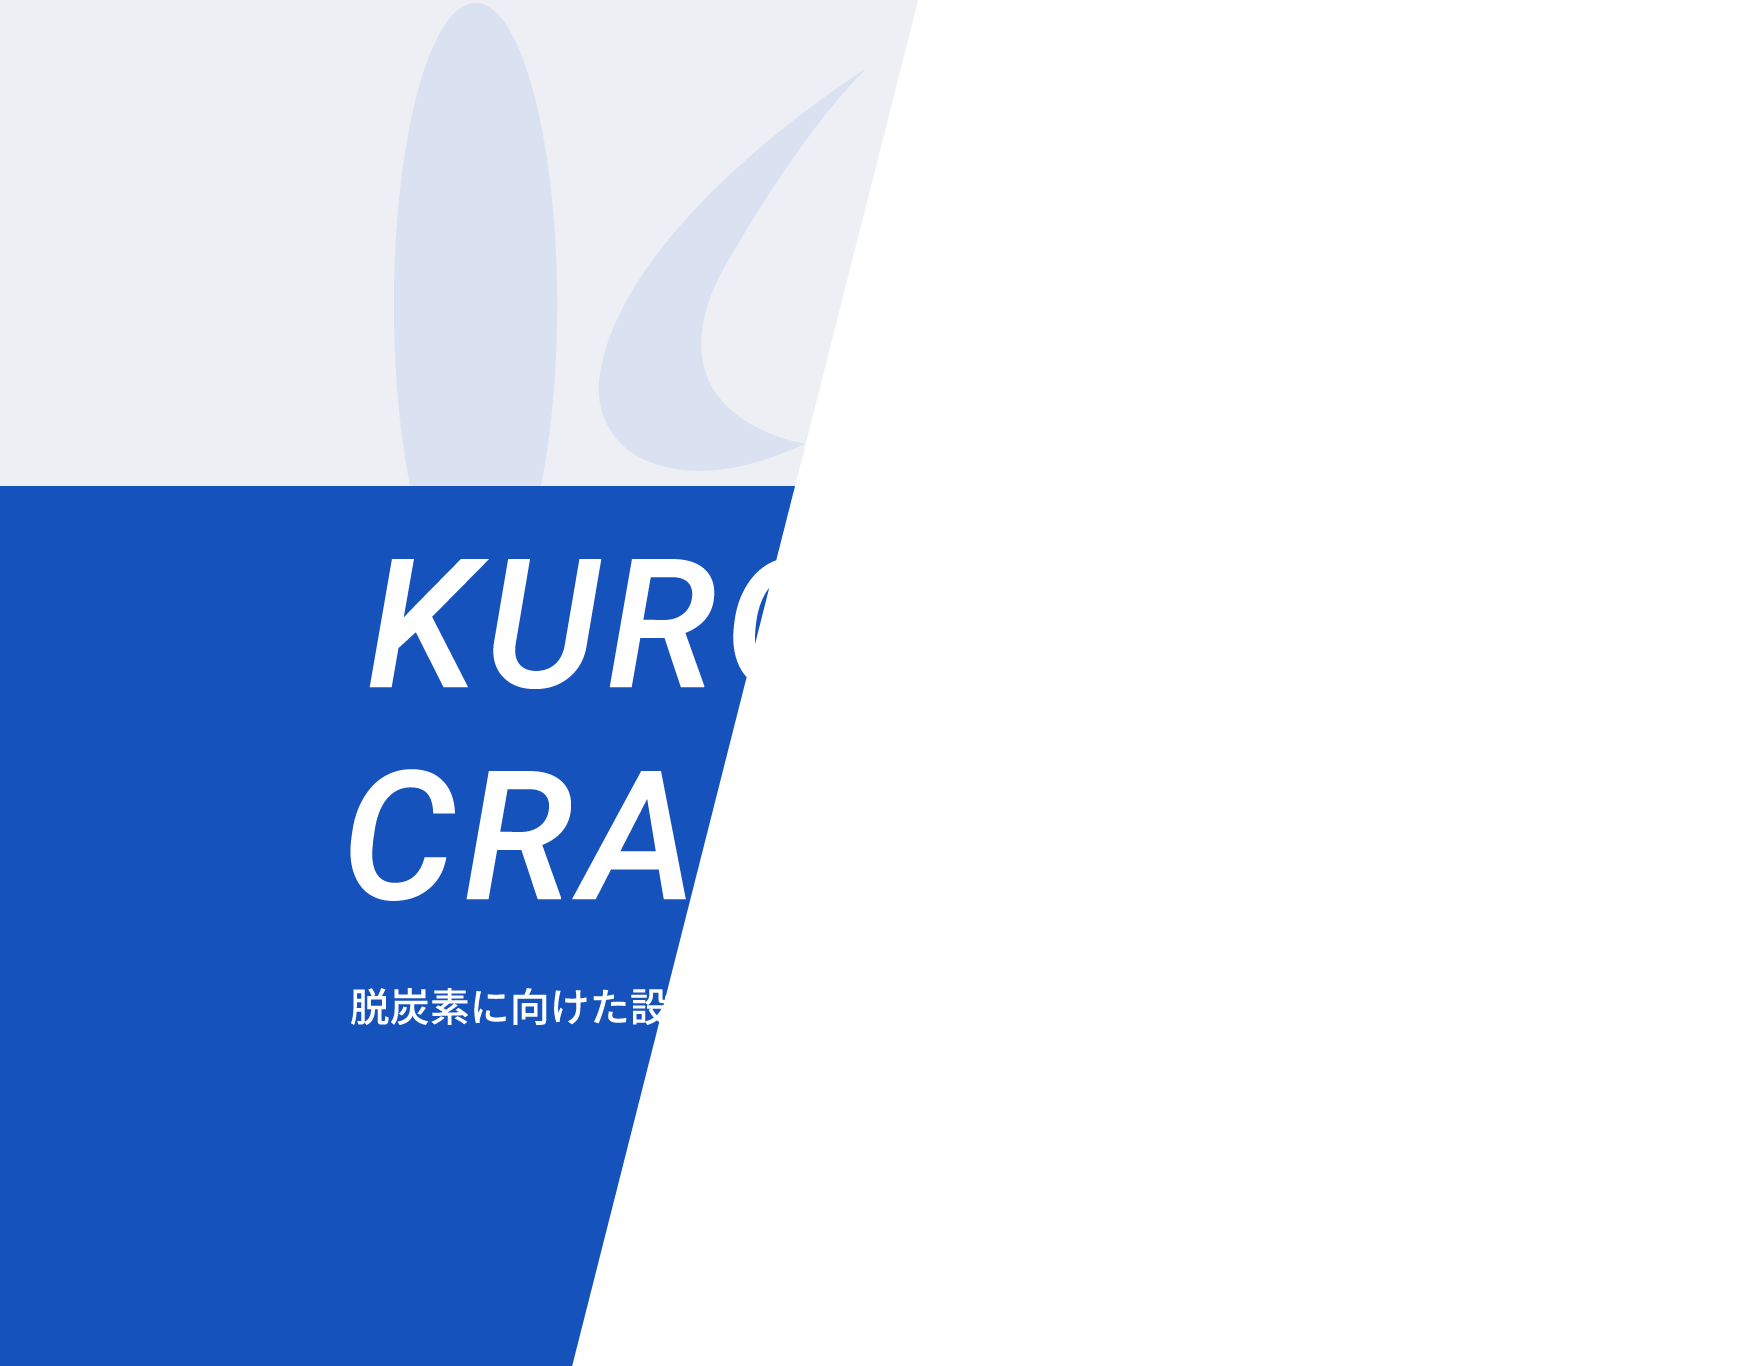 KUROYANAGI CRAFTSMANSHIP 脱炭素に向けた設計やものづくり